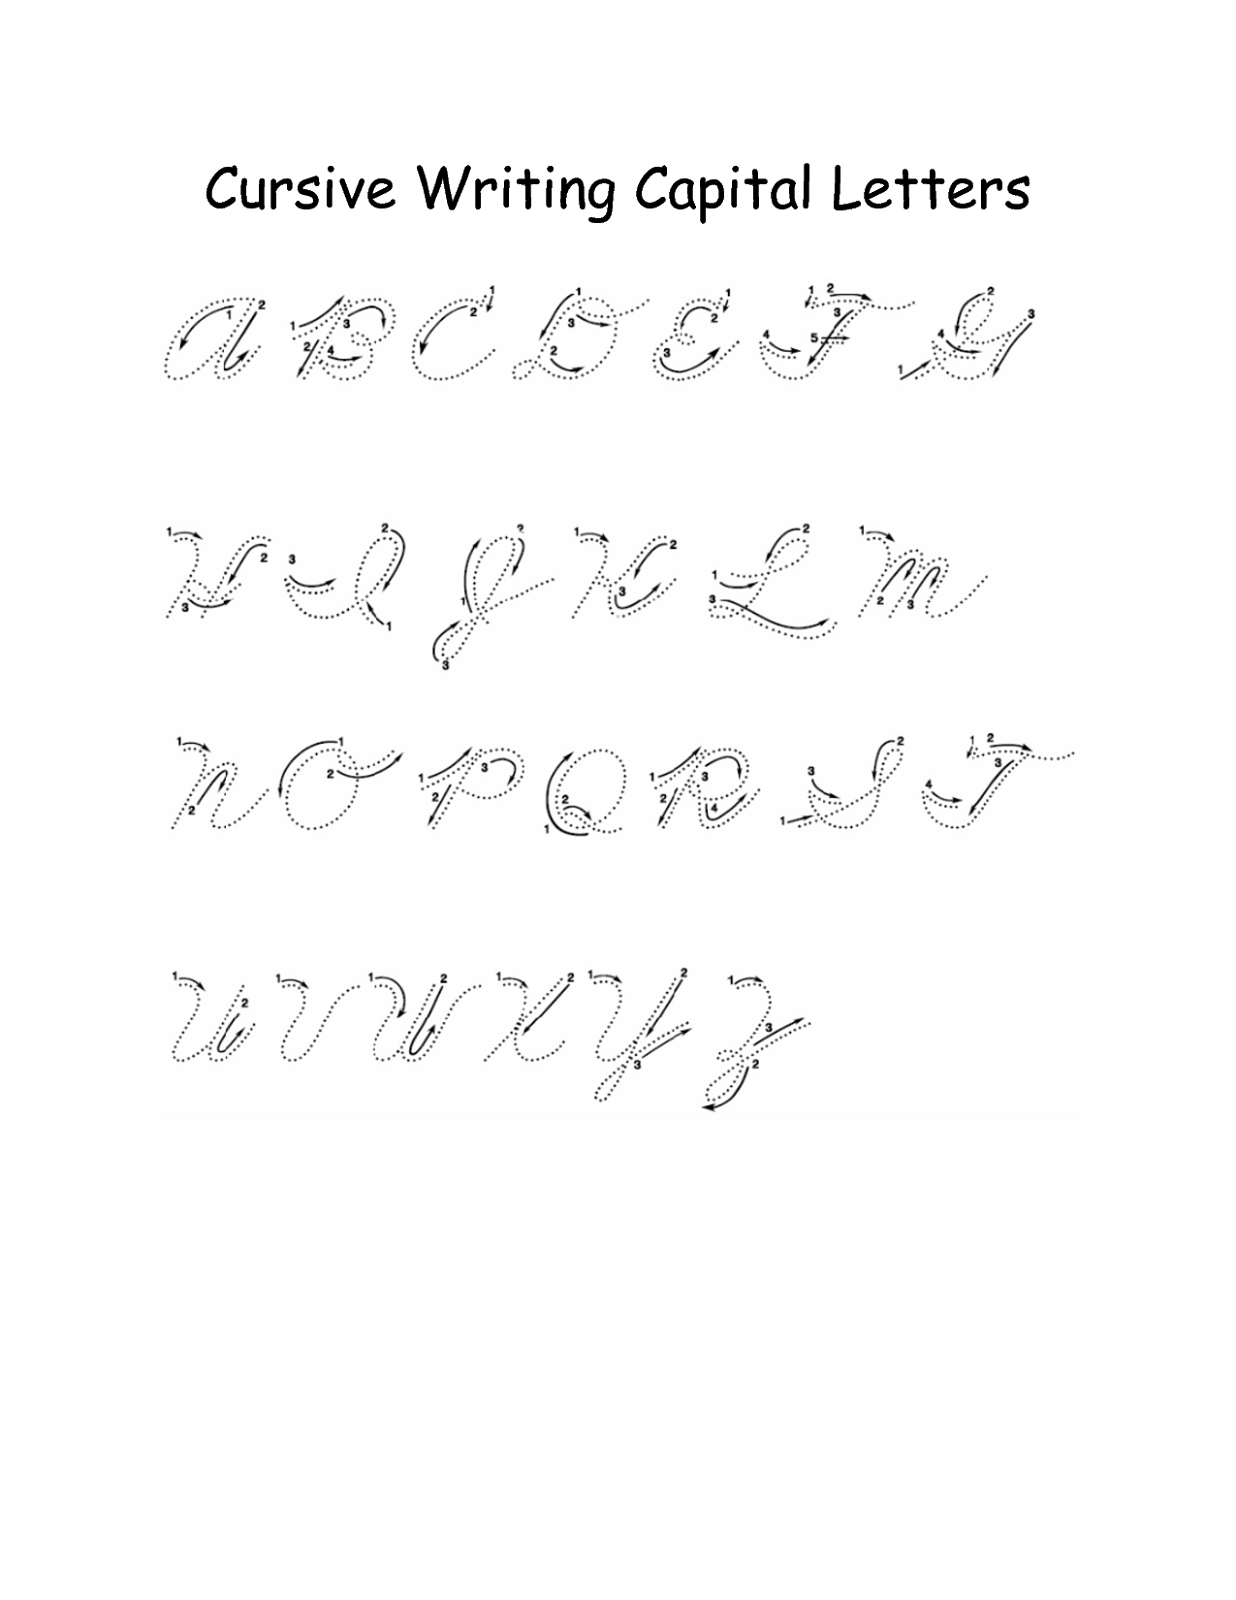 Cursive writing alphabet capital letters cursive